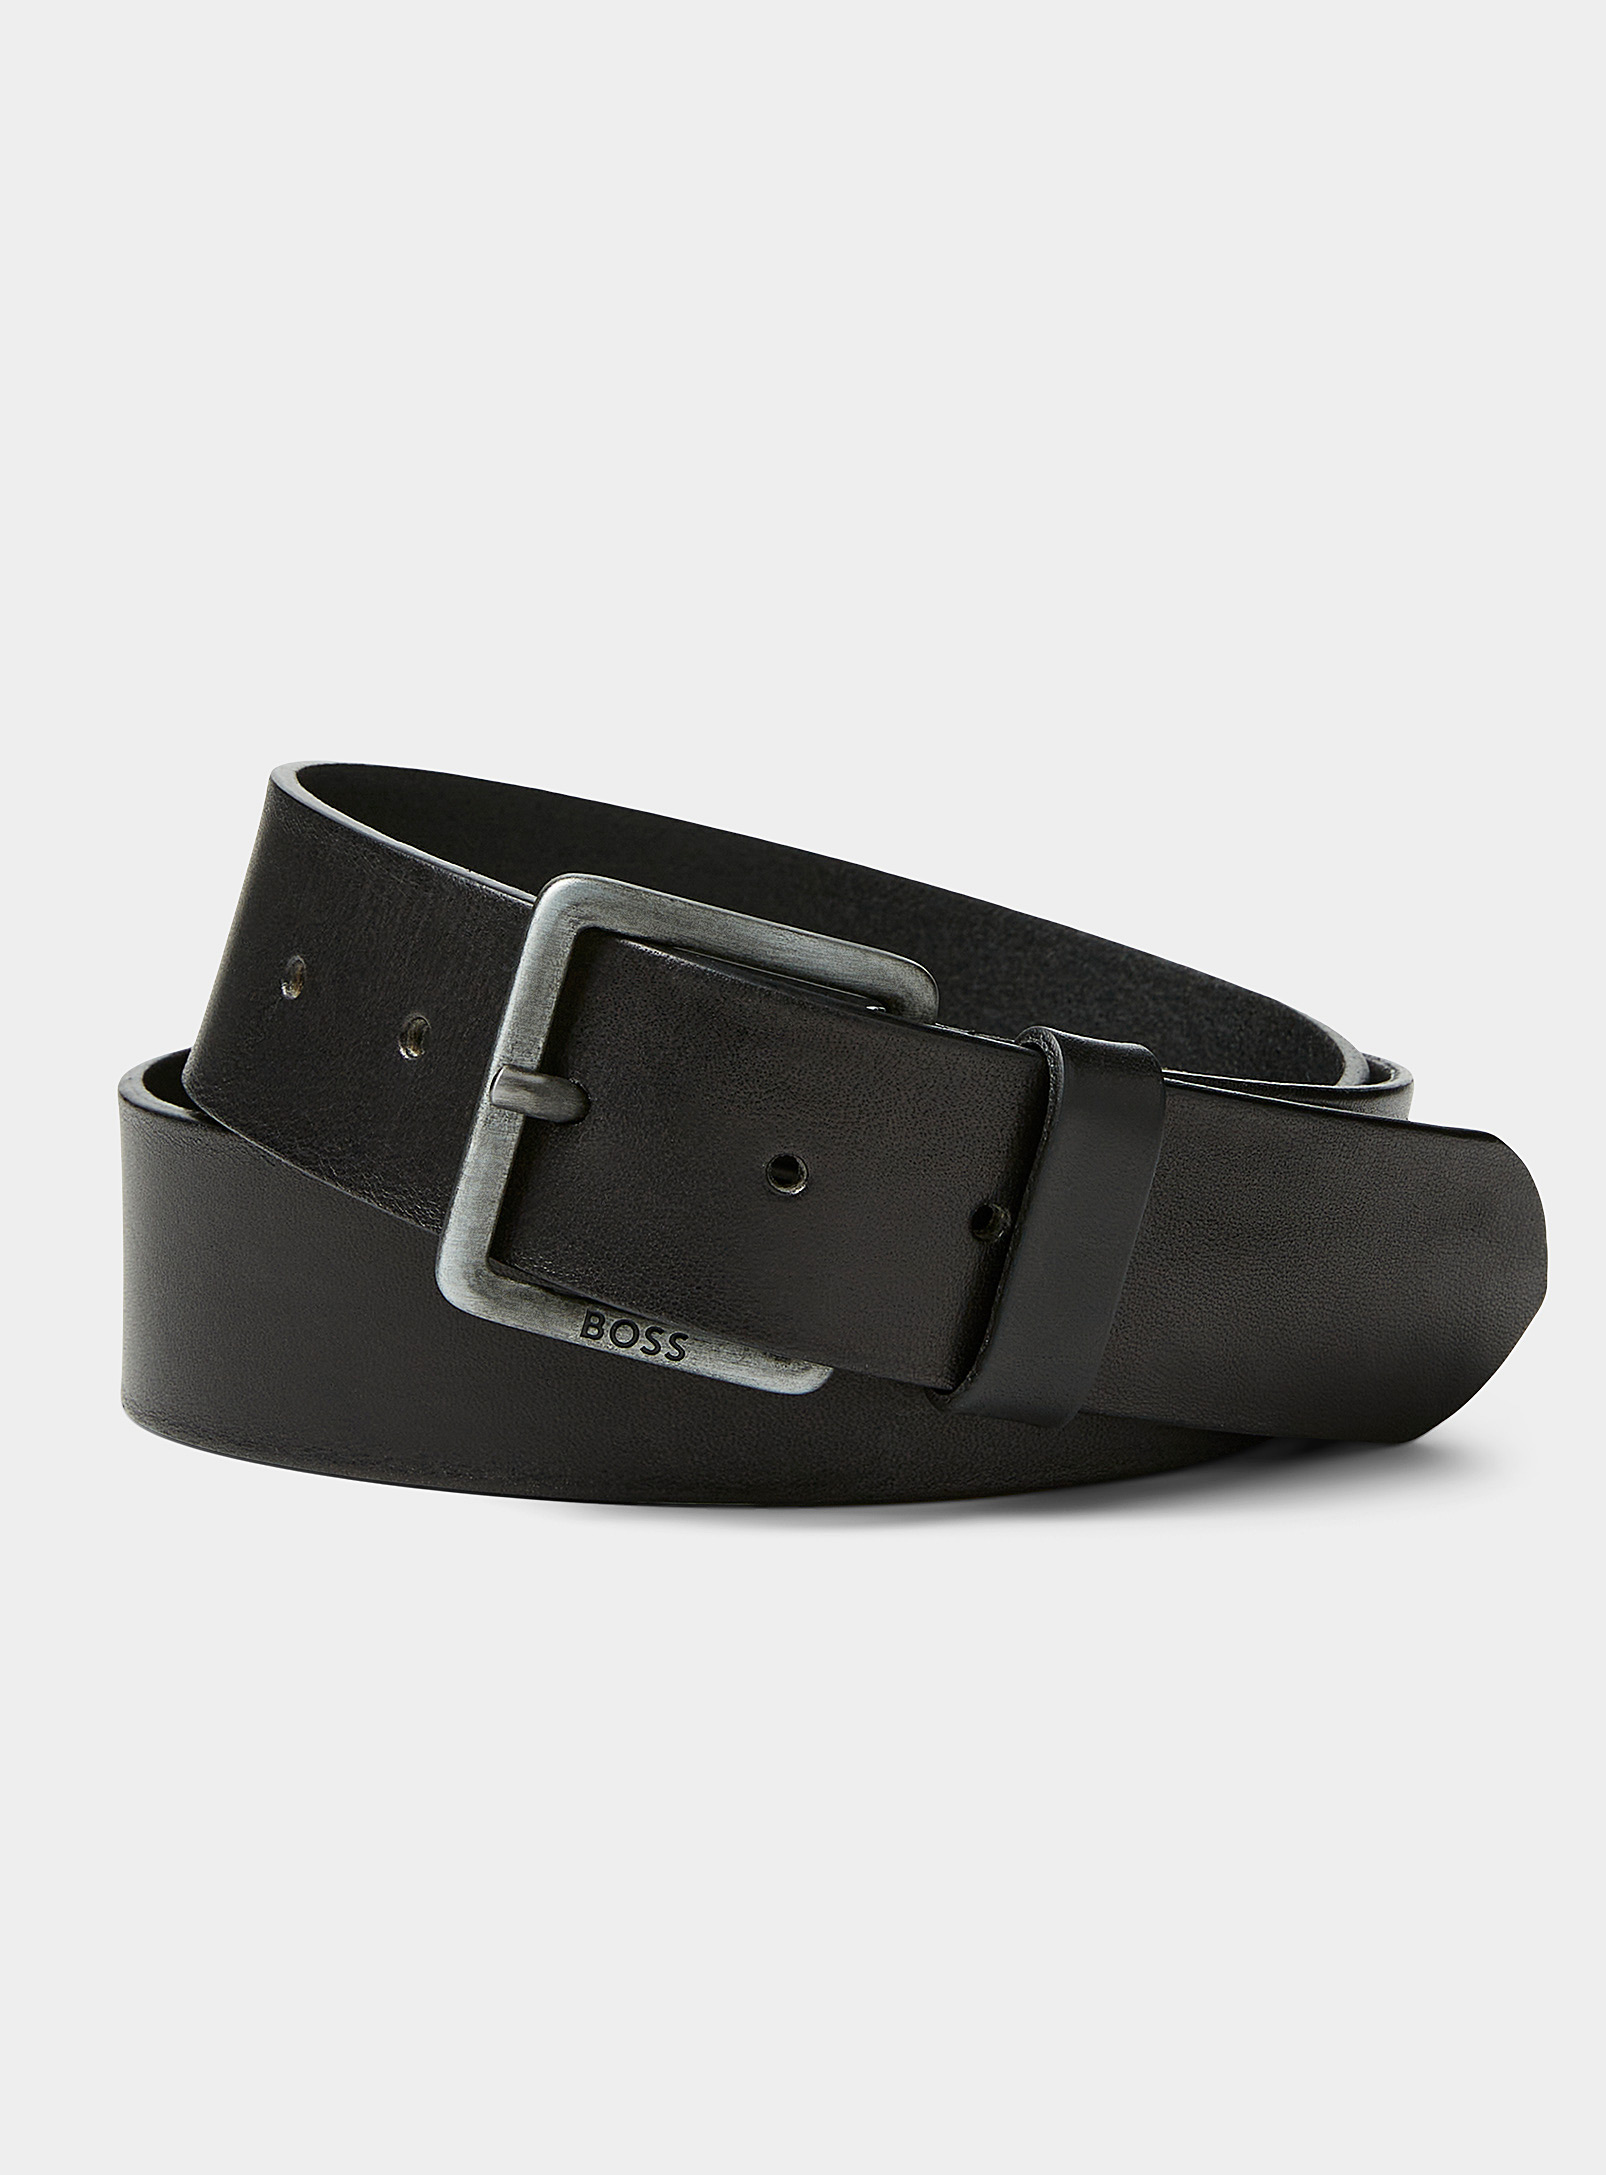 BOSS - Men's Jeeko leather belt